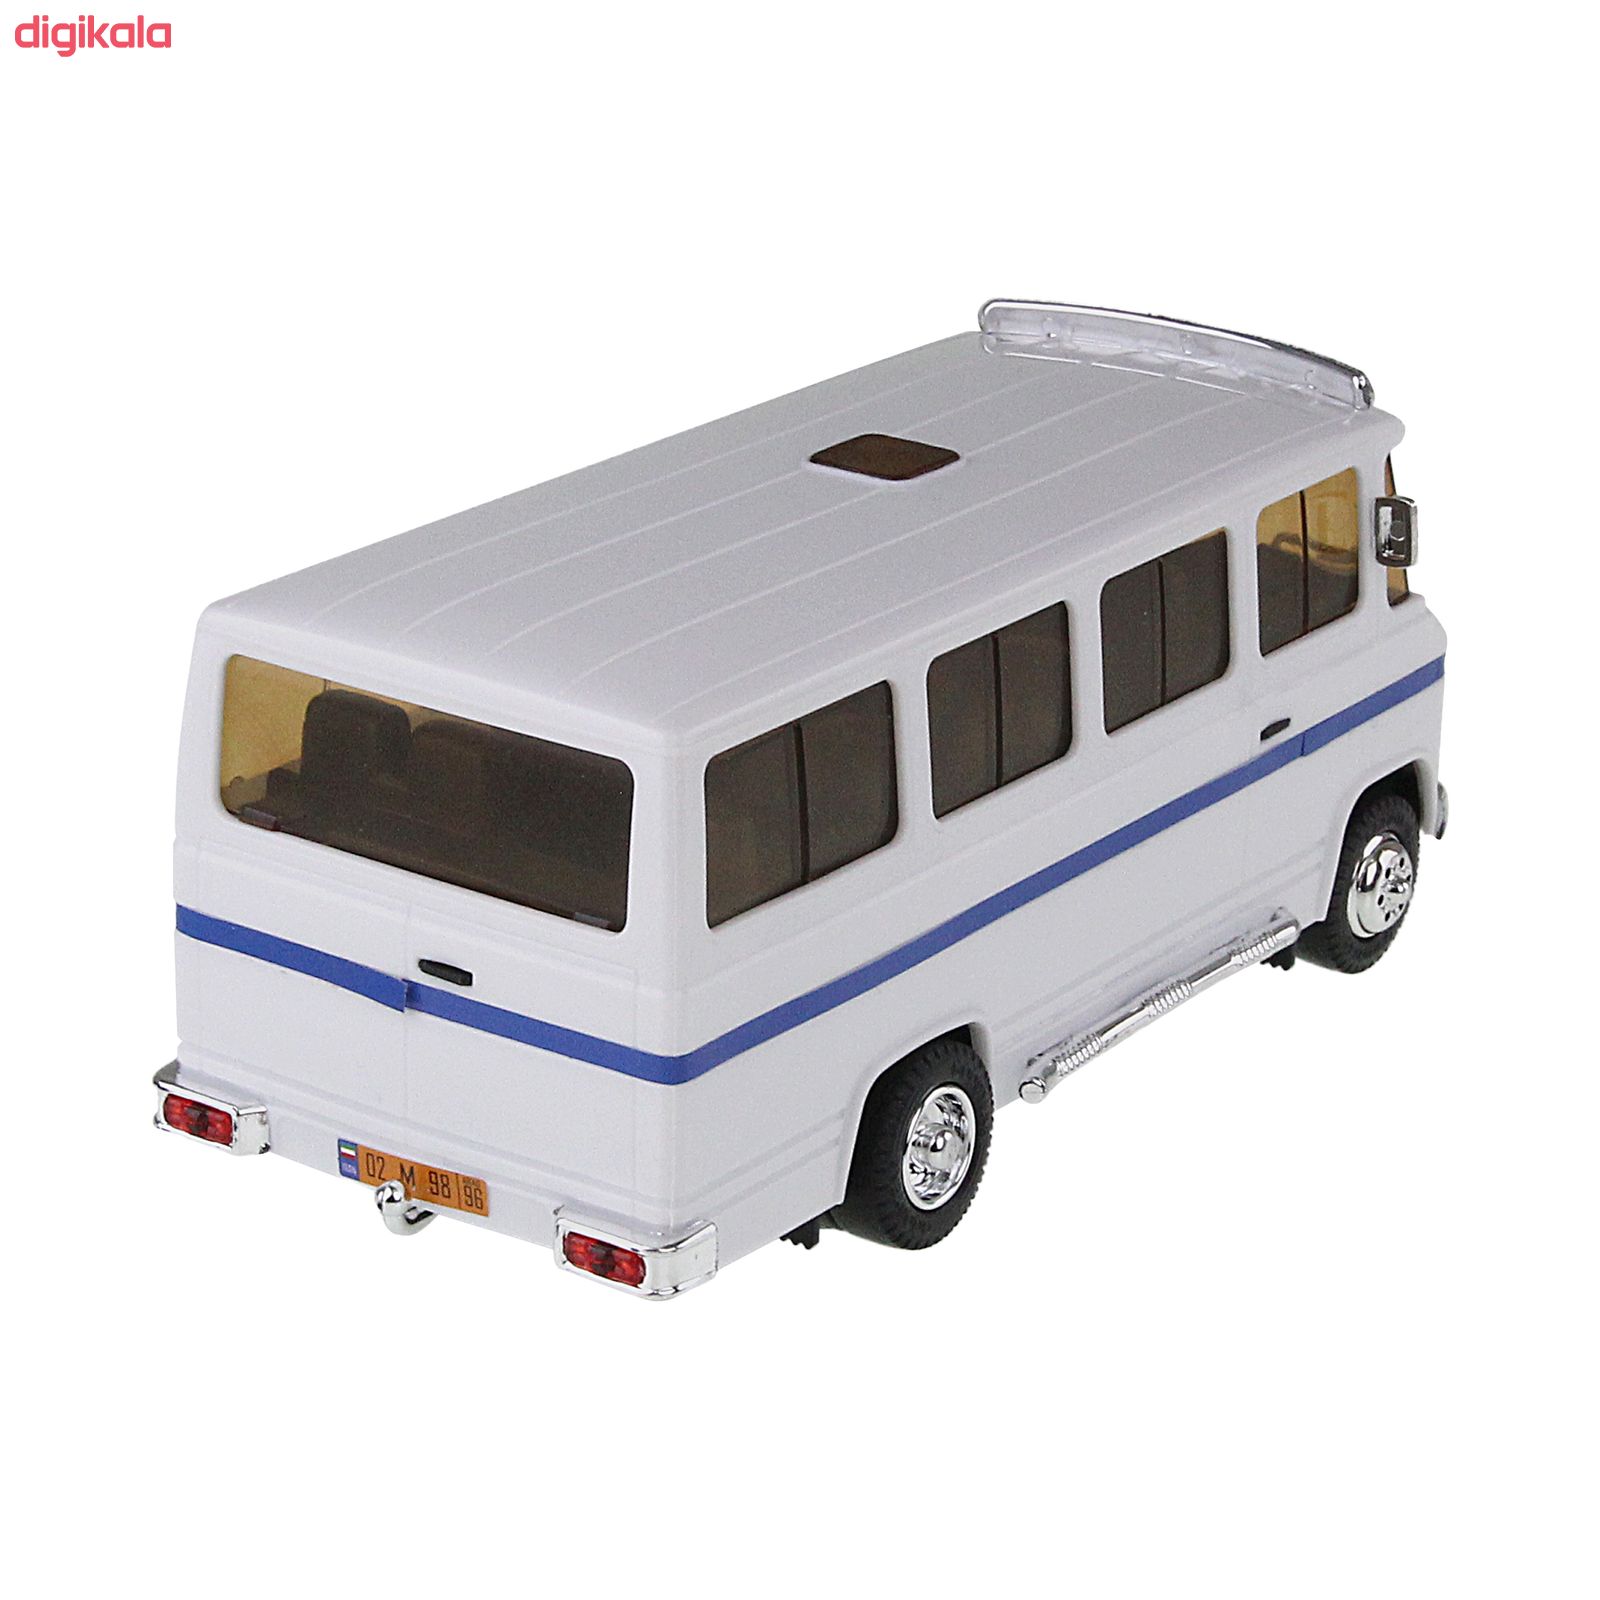  ماشین بازی مدل minibuss